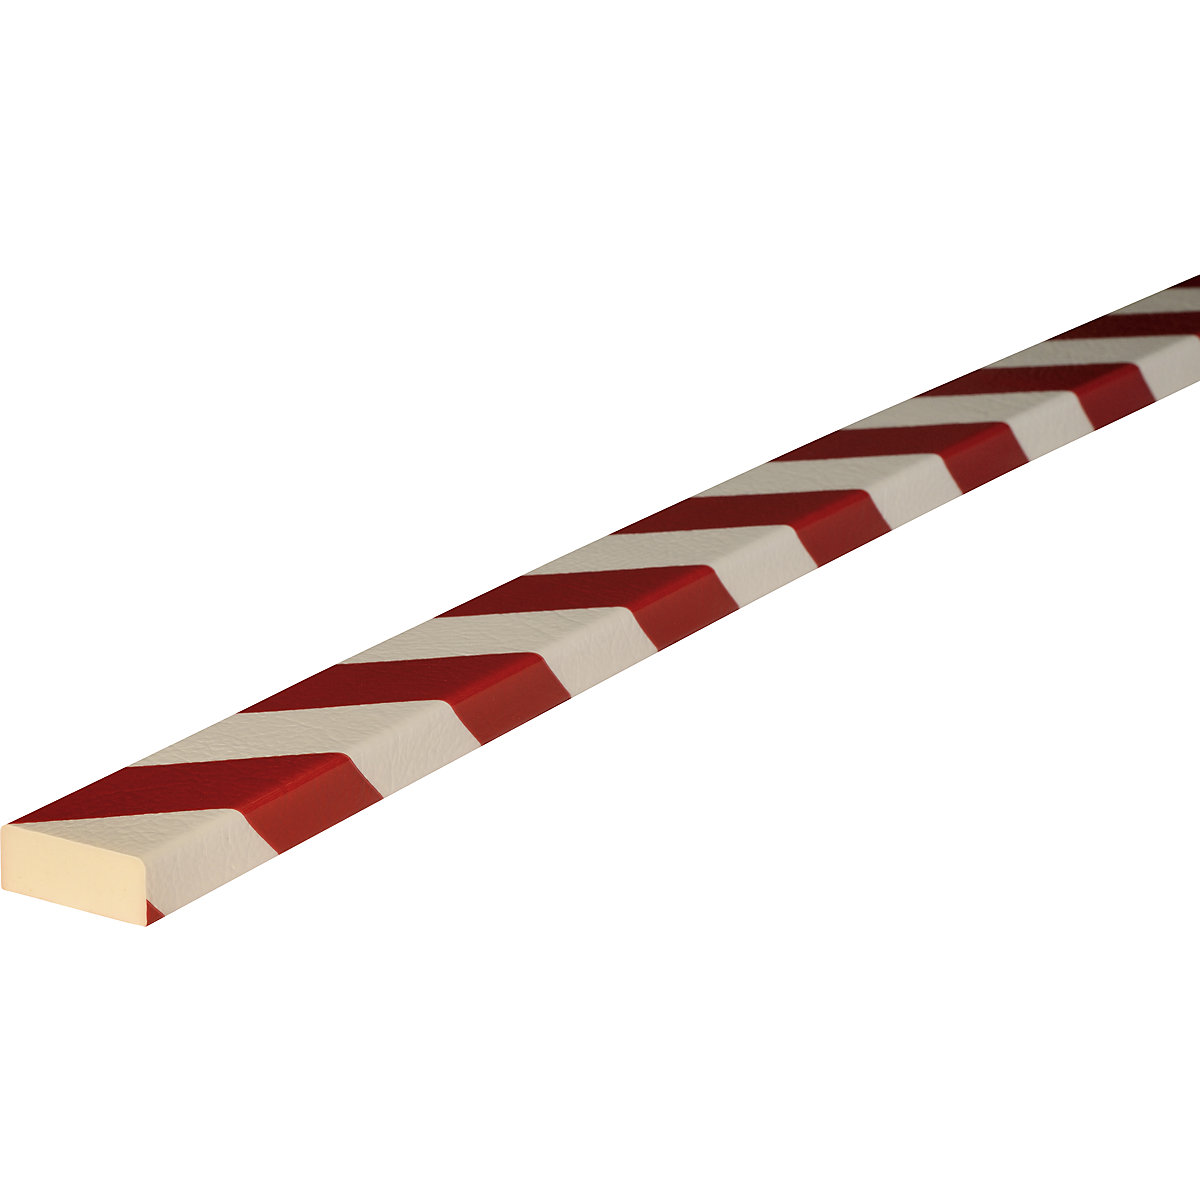 Knuffi® felületvédő – SHG, D típus, 1 m-es darab, piros / fehér-19